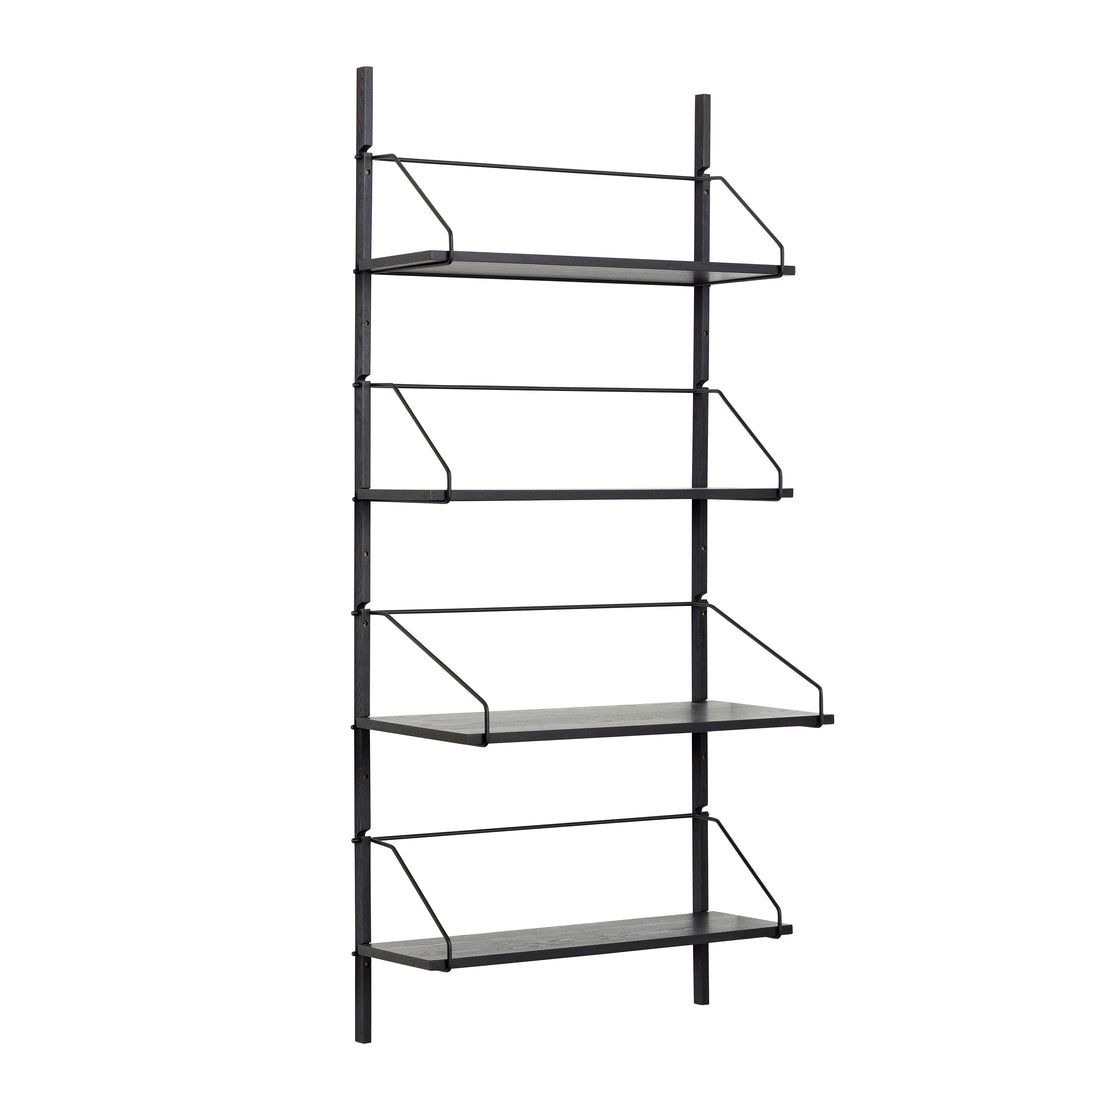 Hübsch Norm wall rack 4 shelves black